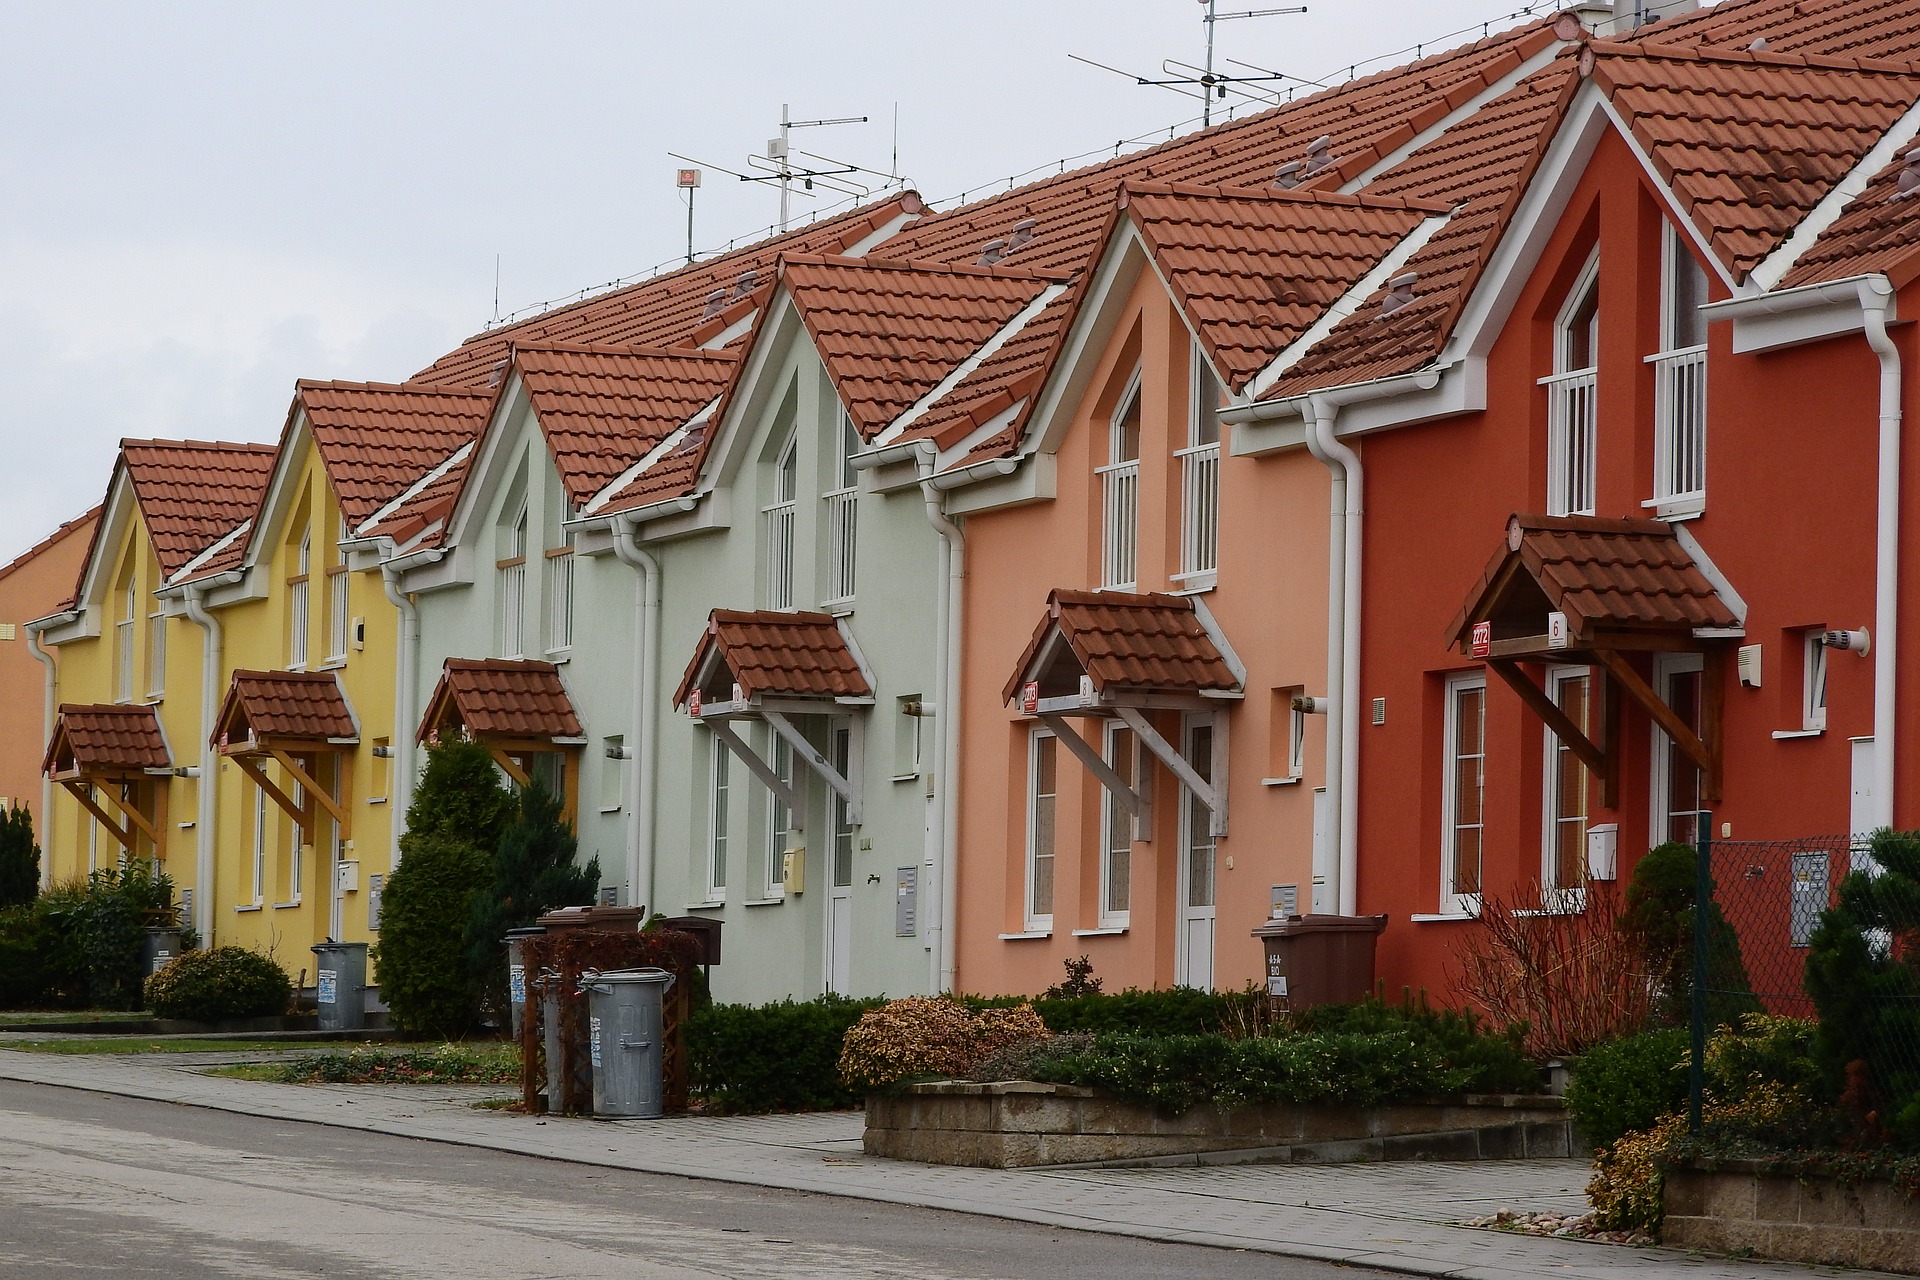 Immobilienmanagement: Warschau und Marktsituation